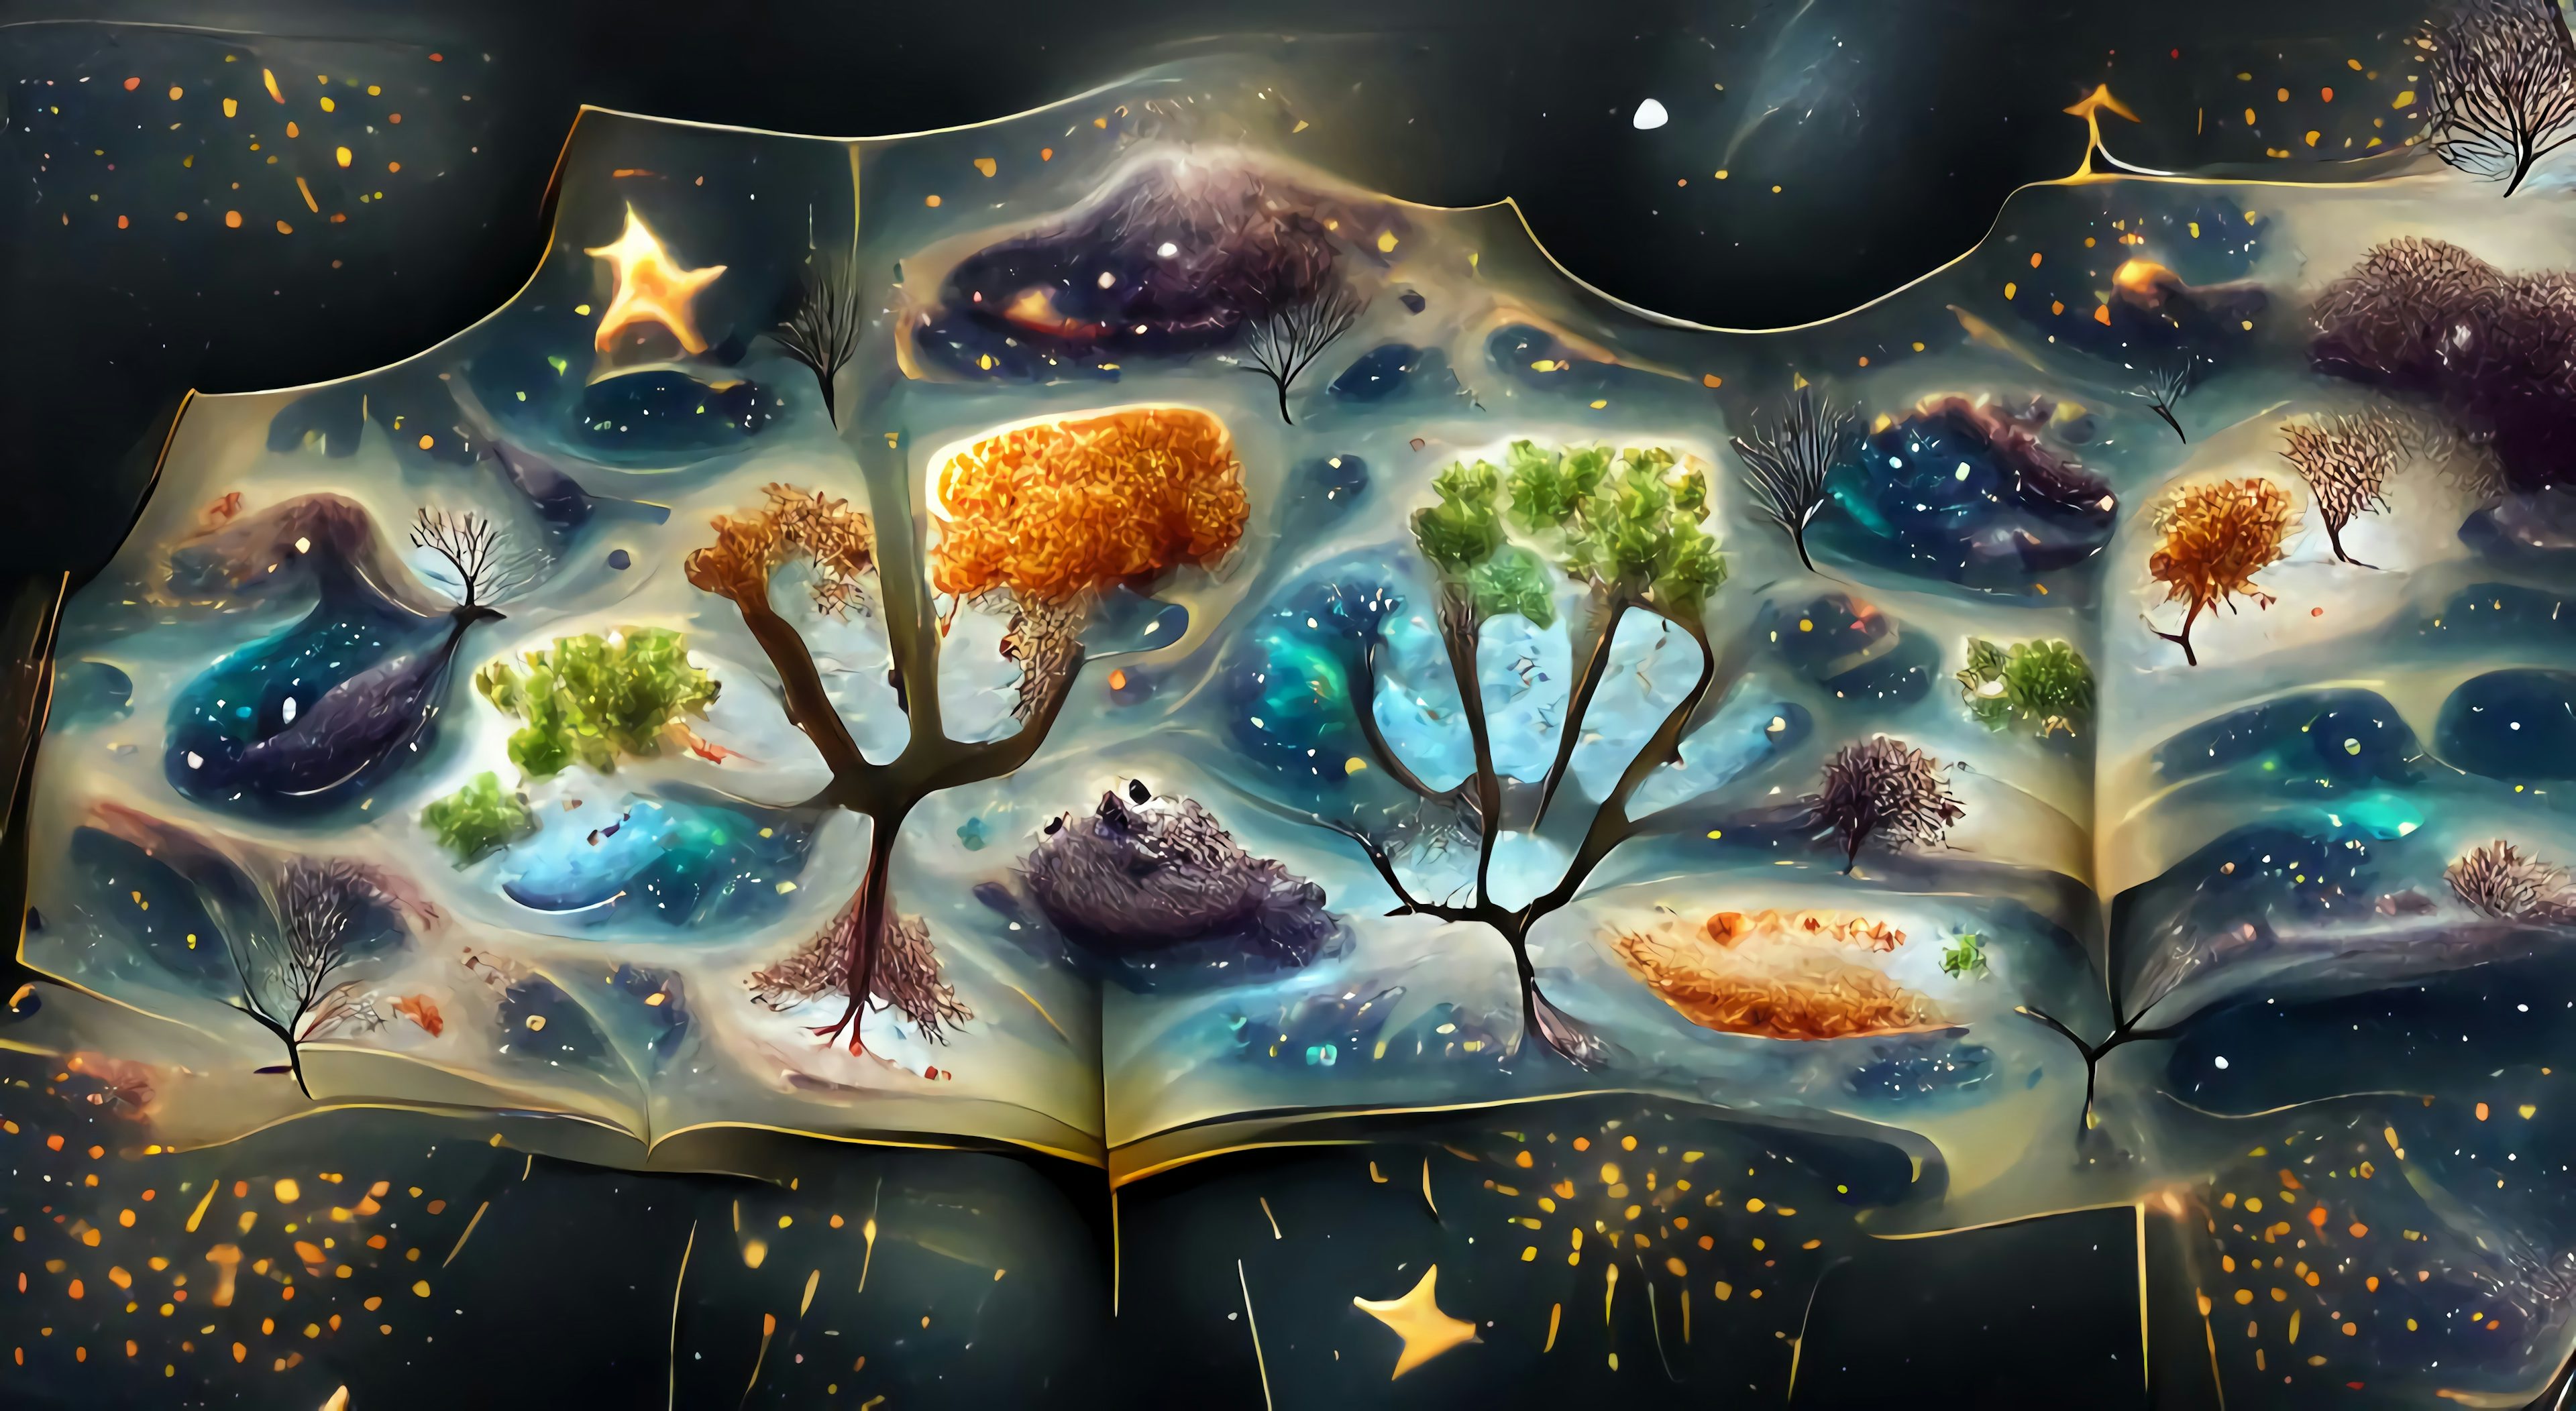 Peter Pink-Howitt, "Universal tree of life", algo-art, 2021 CE